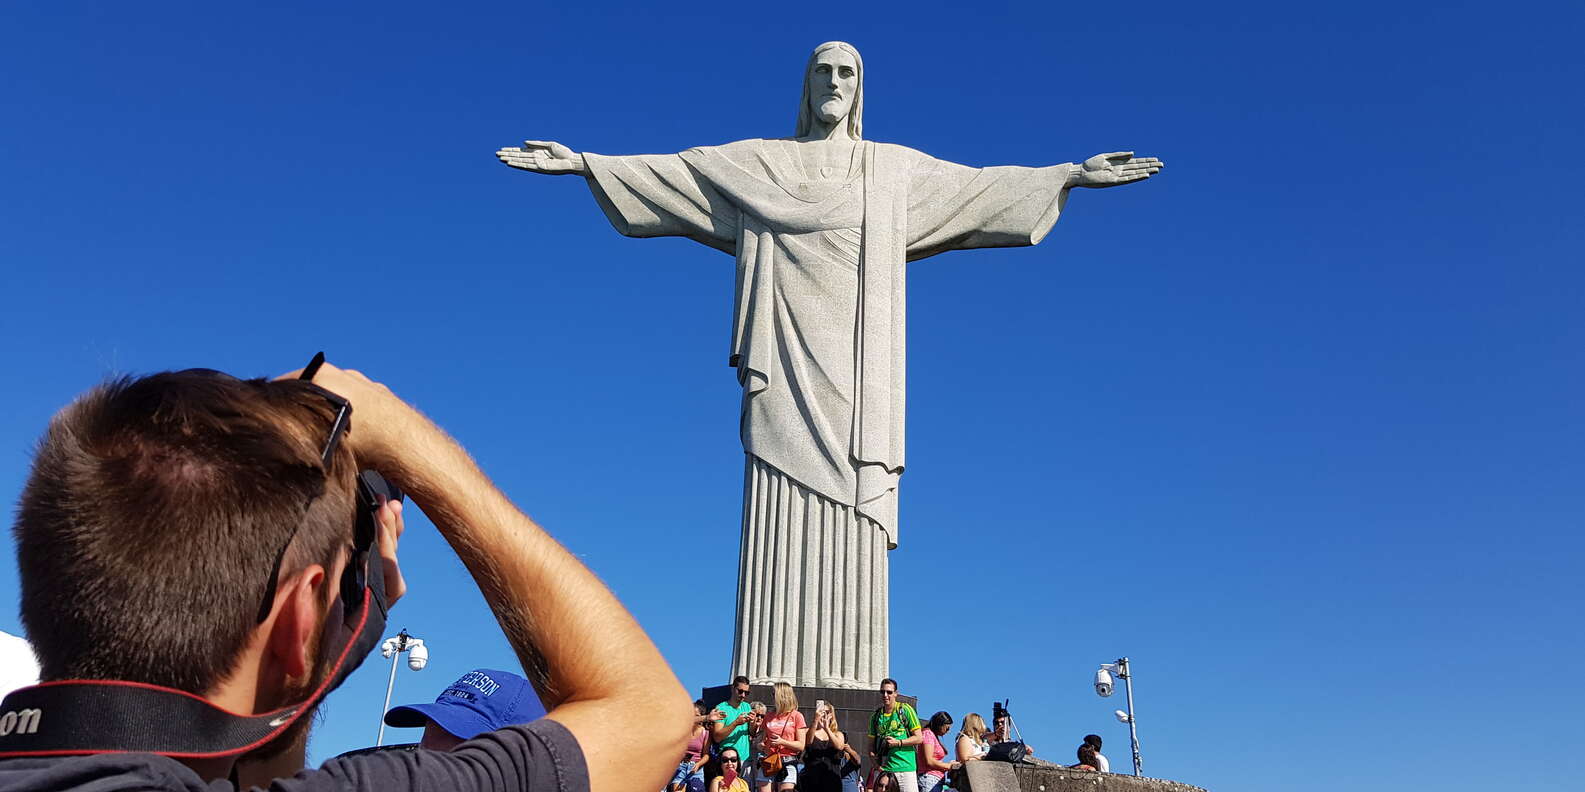 What to do in Rio de Janeiro